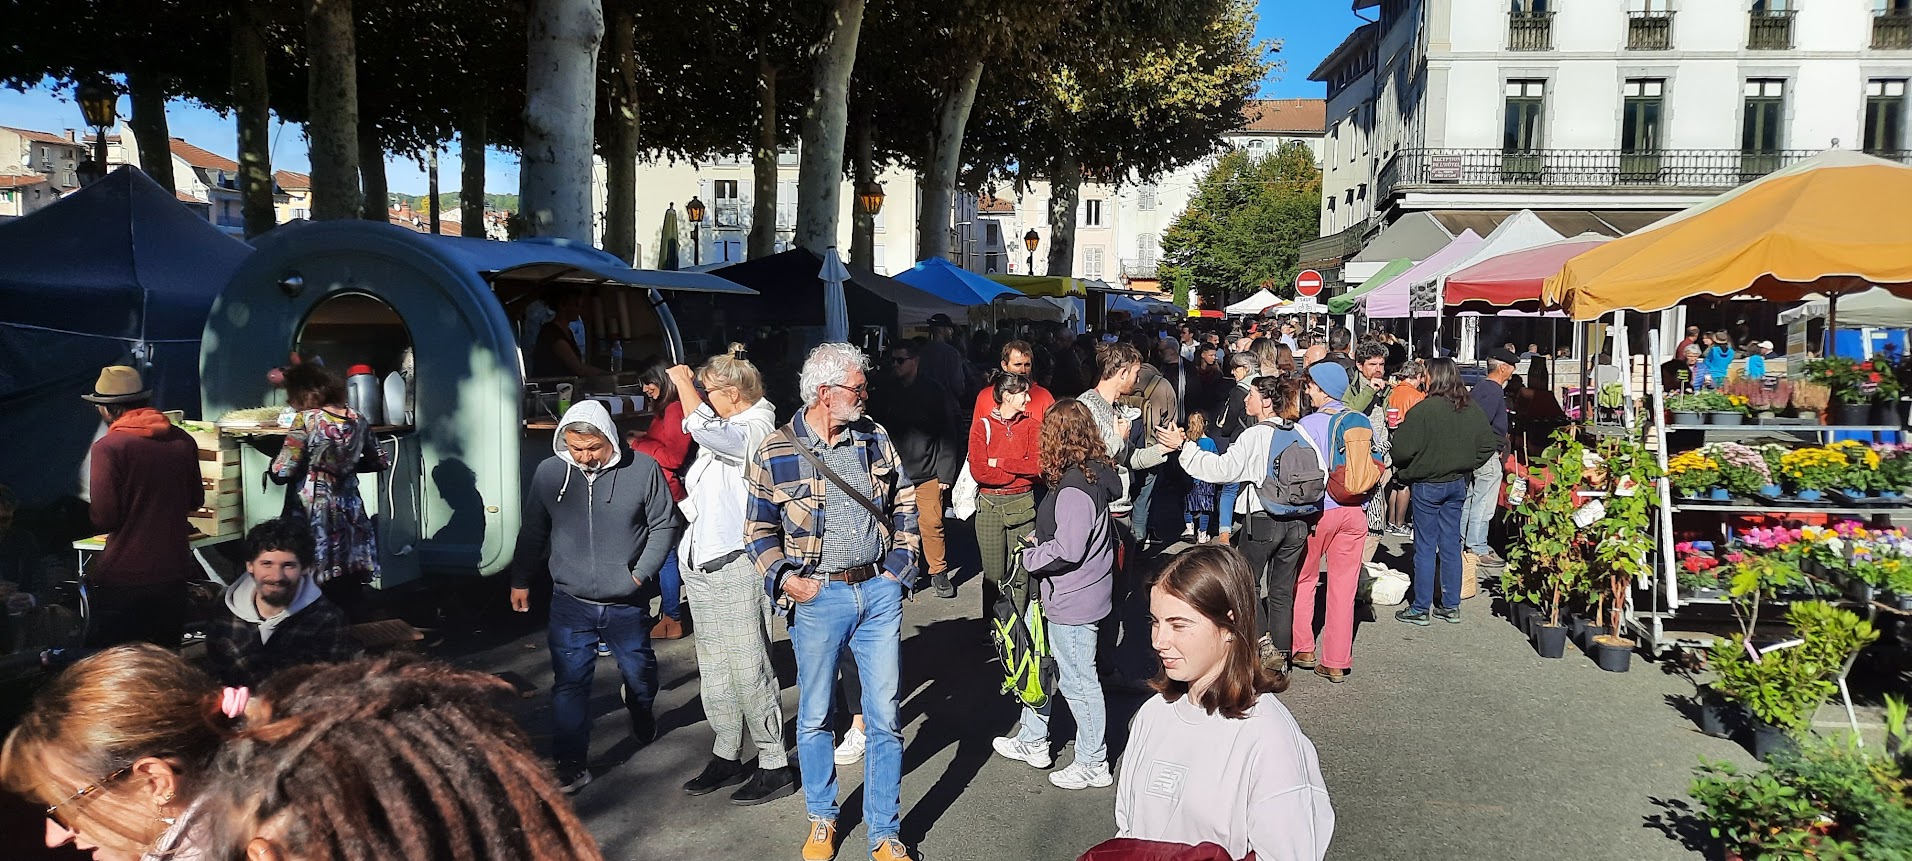 St Girons markt op zaterdagochtend